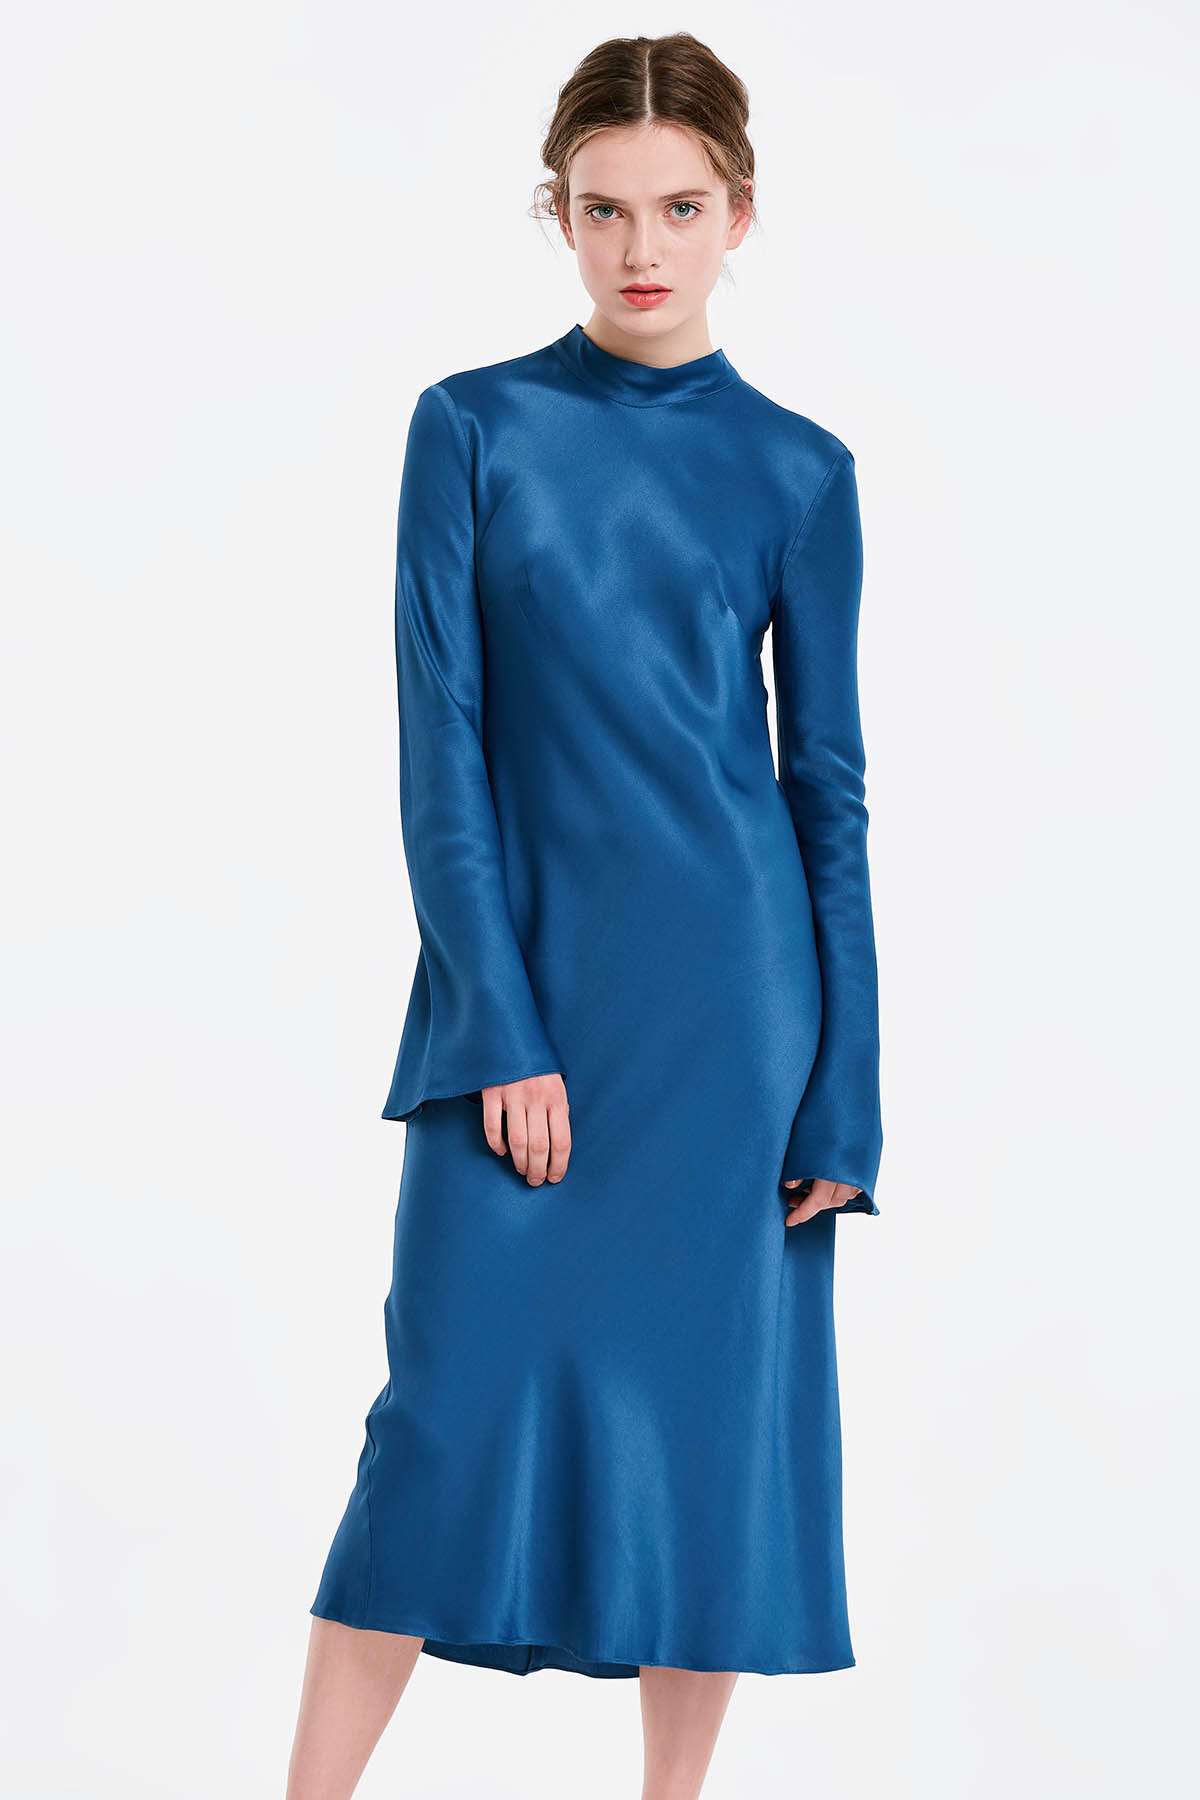 Синее платье с бантом на спине, рукав клеш, фото 1